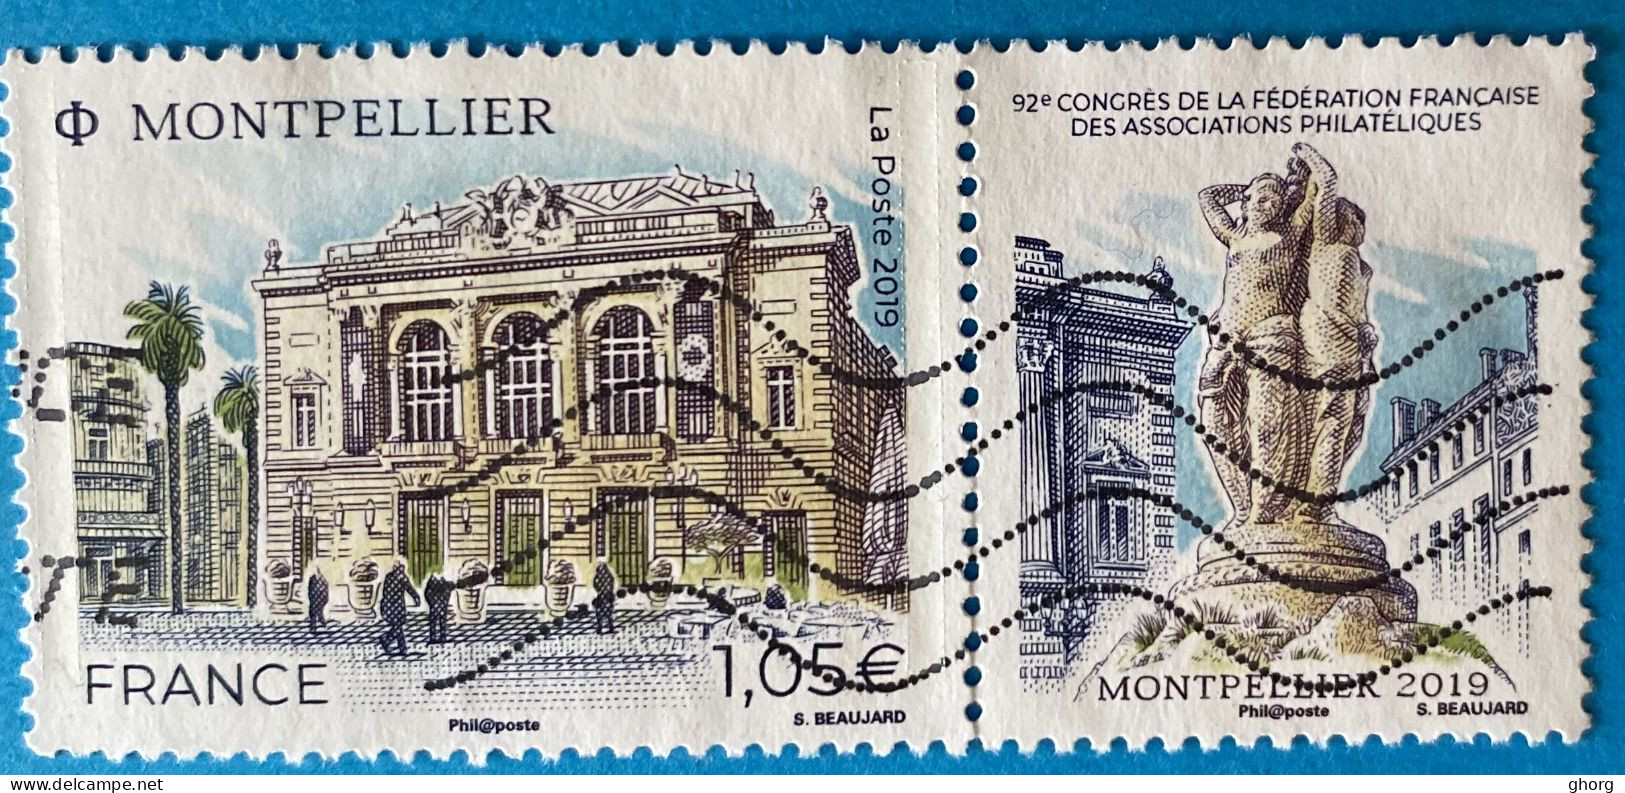 France 2019 : 92e Congrès De La Fédération Française Des Associations Philatéliques à Montpellier N° 5332 Oblitéré - Used Stamps